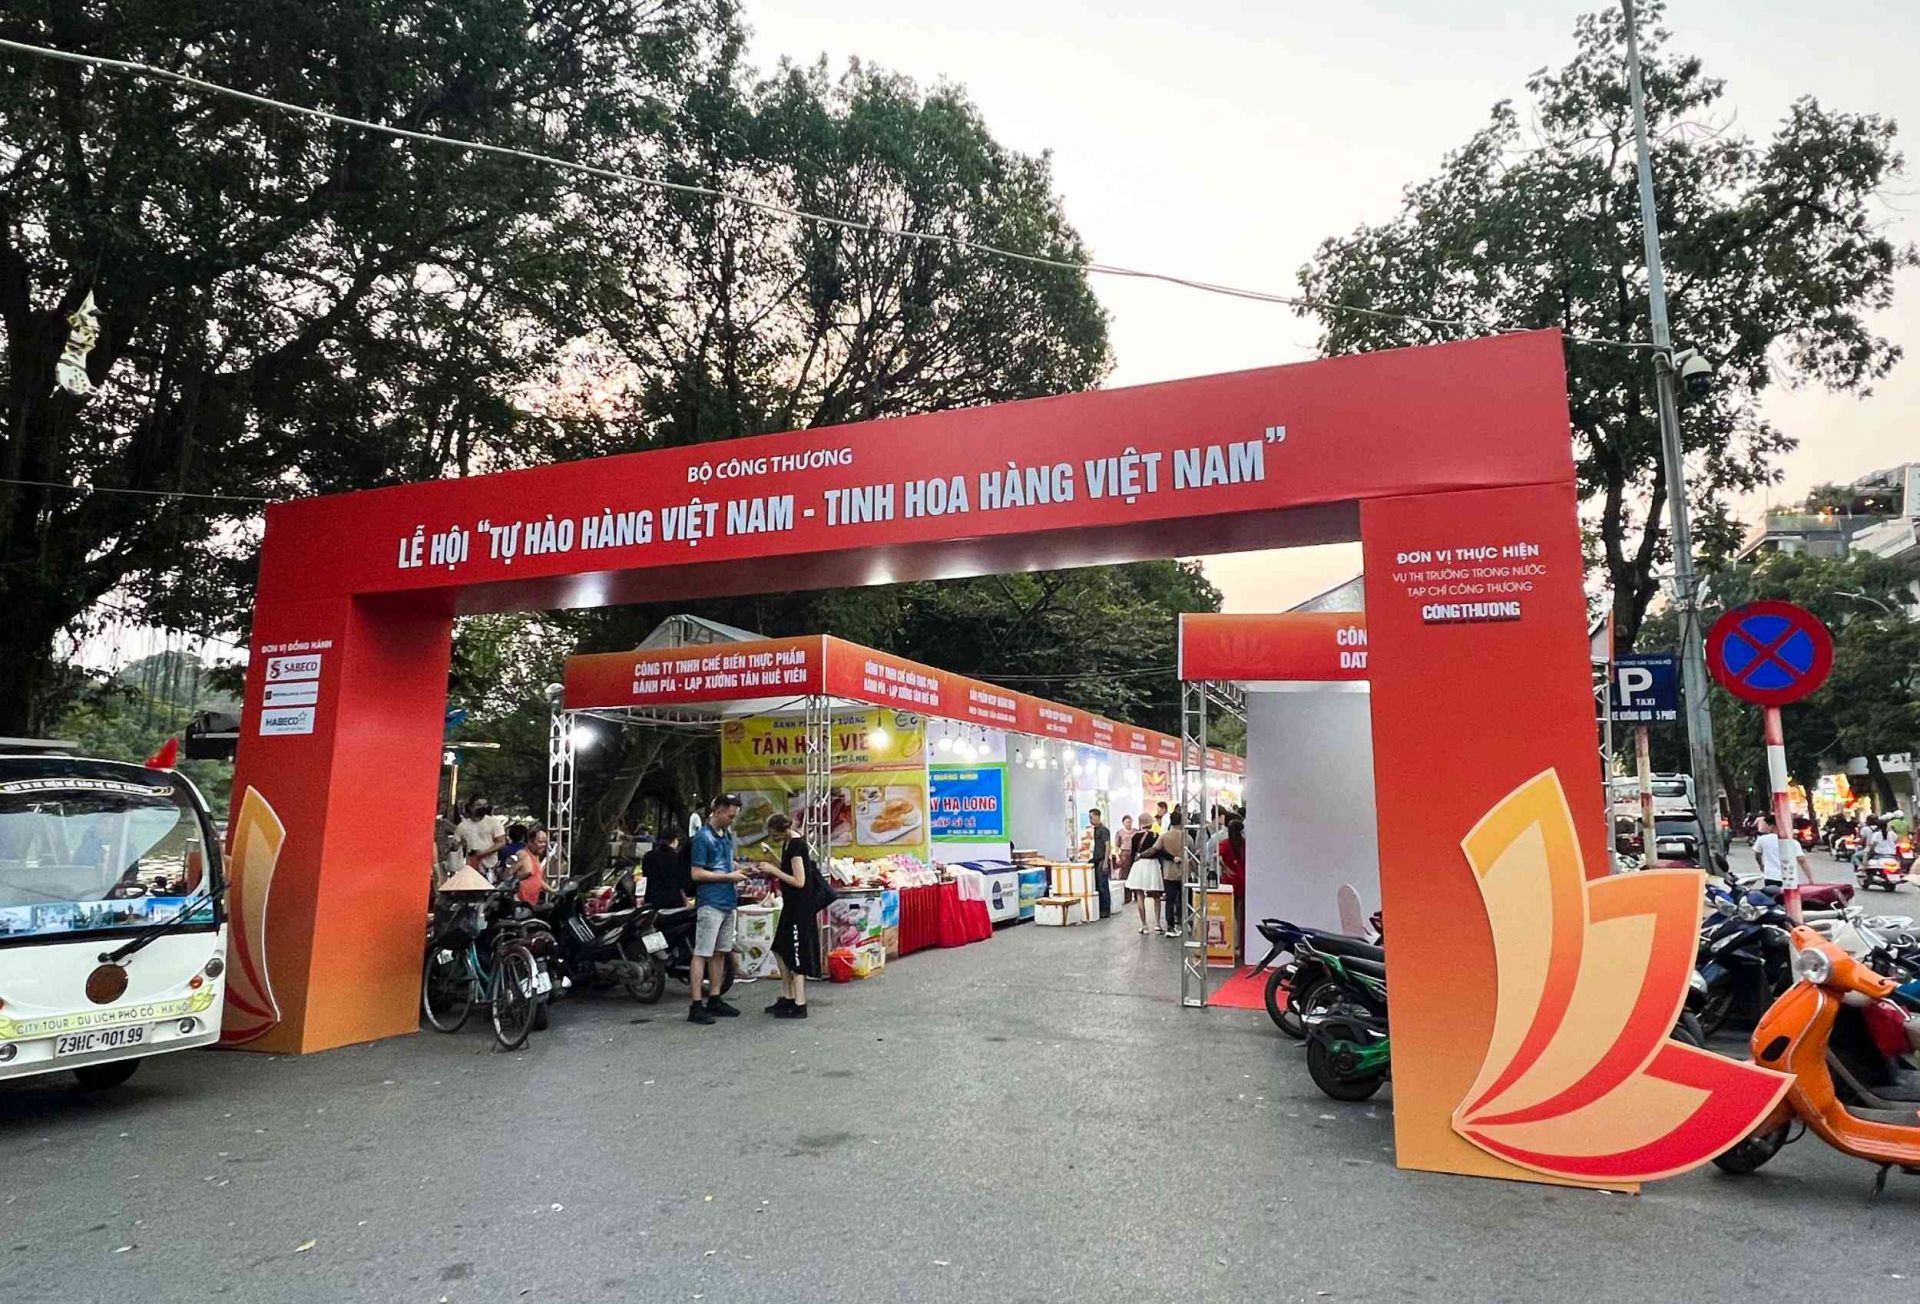 Lễ hội “Tự hào hàng Việt Nam - Tinh hoa hàng Việt Nam” năm 2022